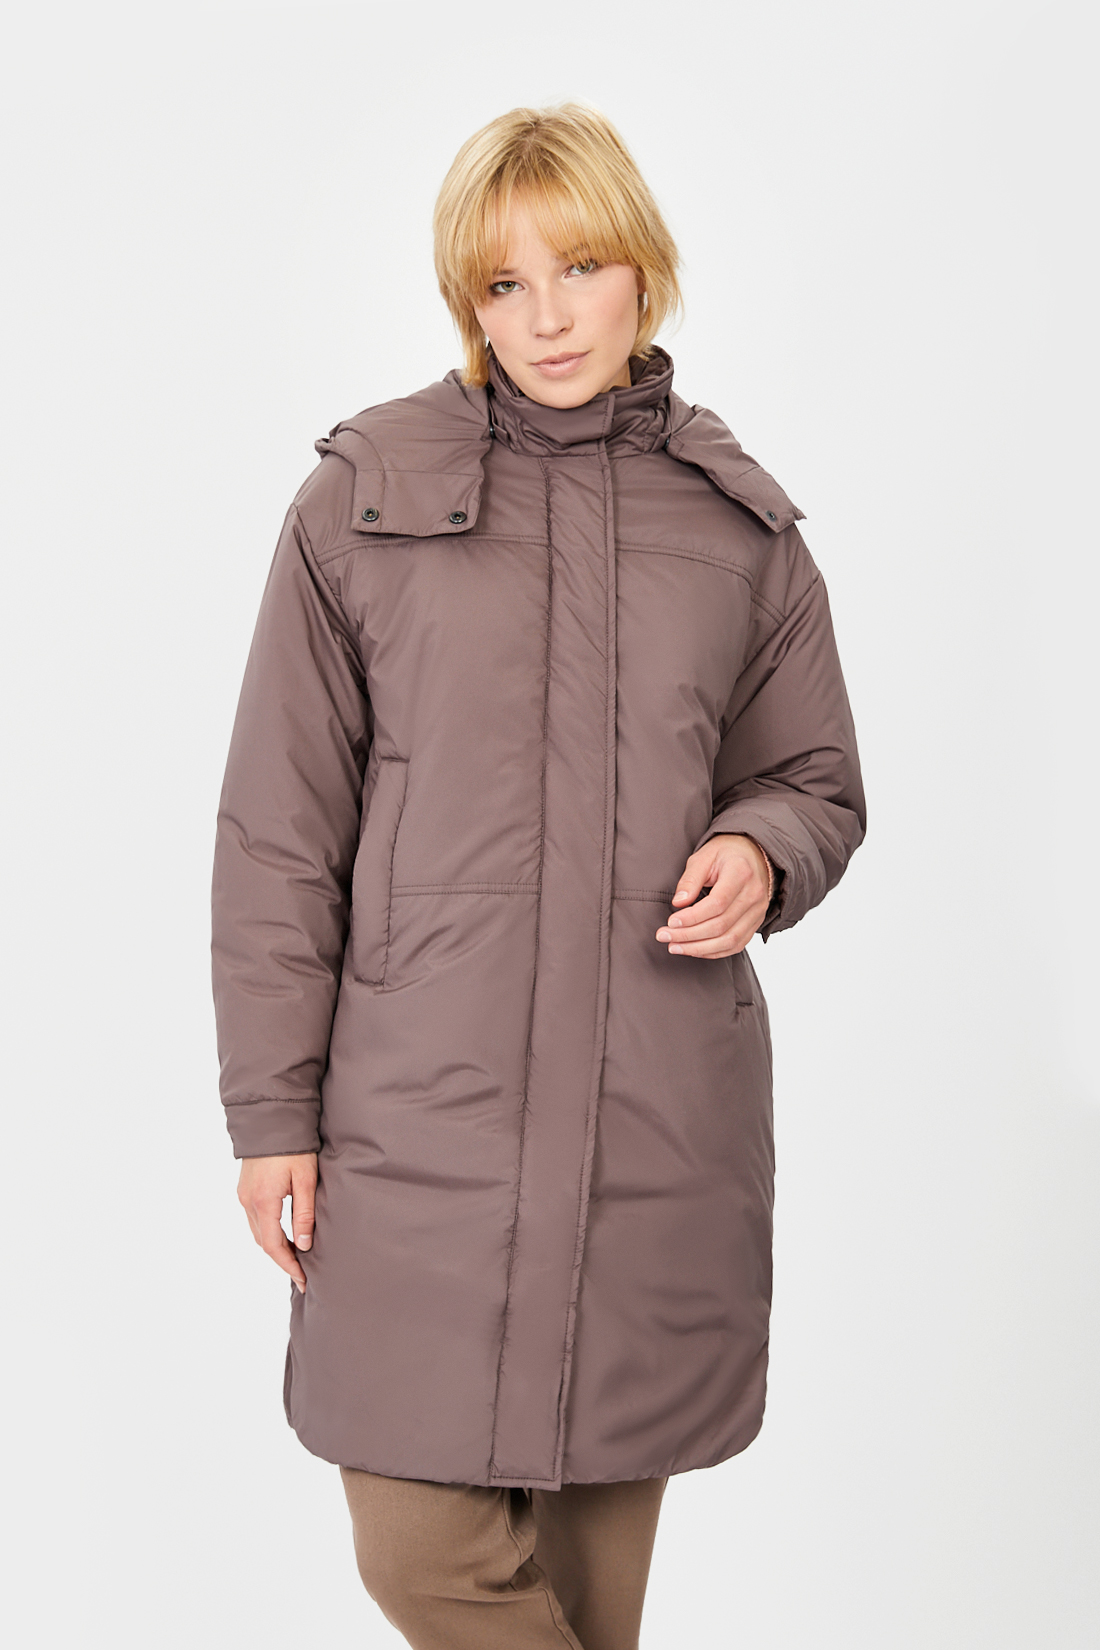 фото Утепленное пальто женское baon b031506 коричневое s